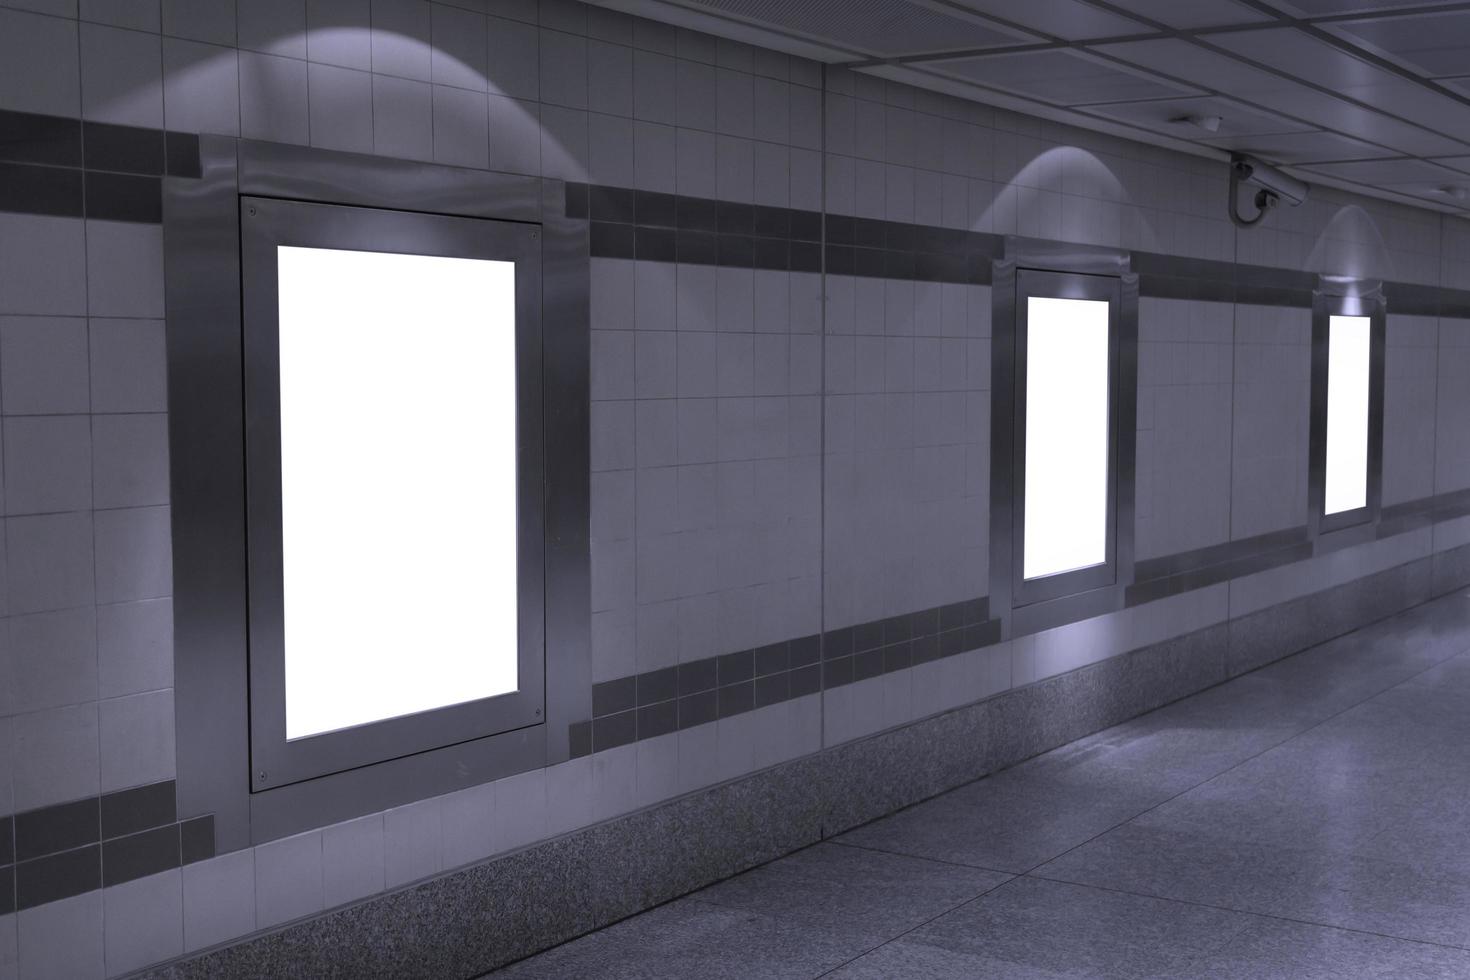 maqueta de cartelera en blanco en el metro foto